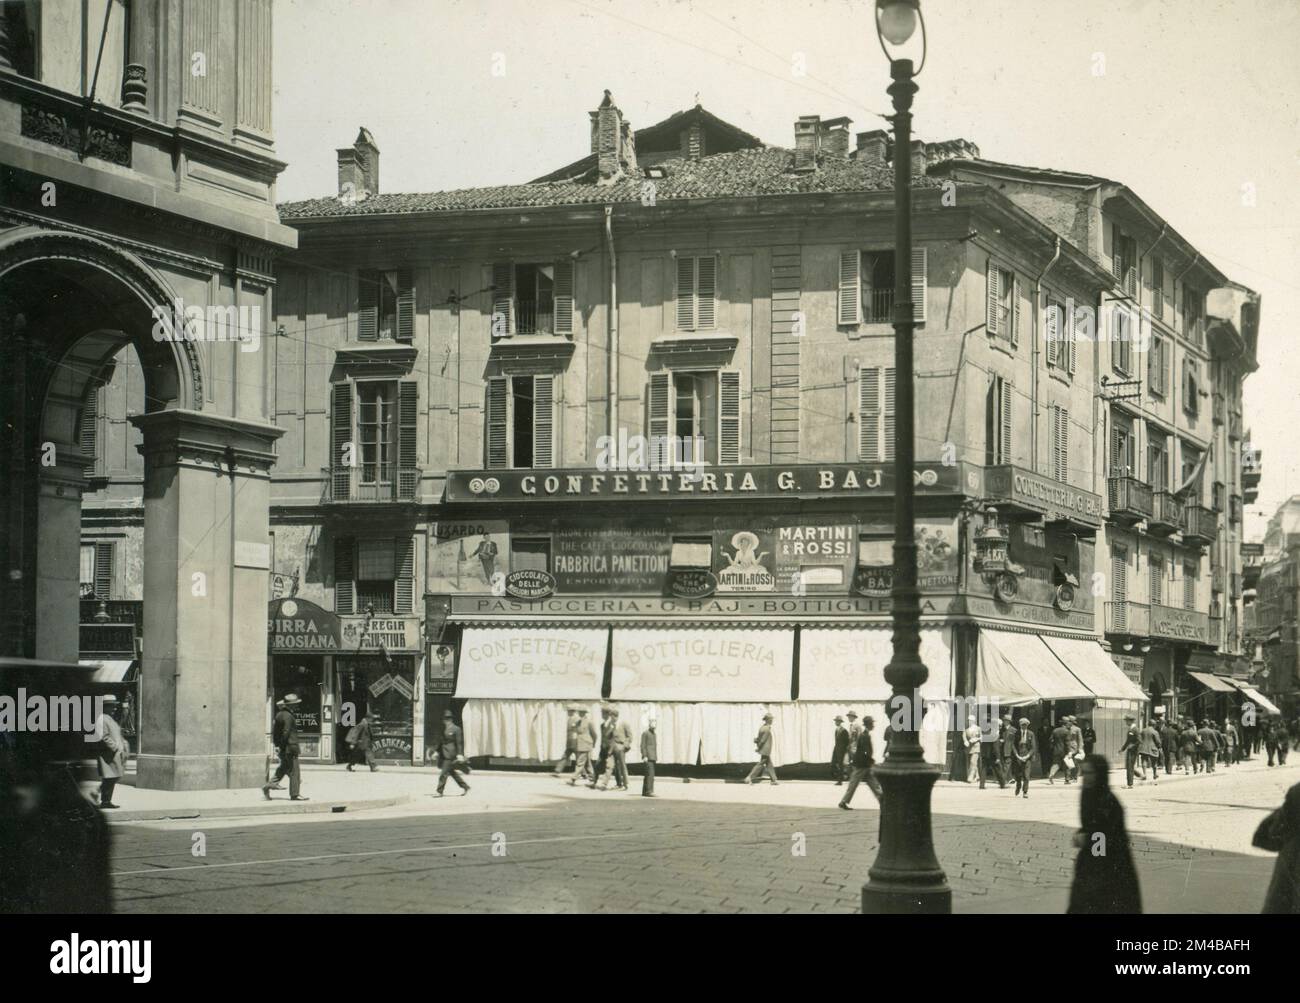 Vue sur les bâtiments démolis à l'angle entre la via S. Radegonda et la Piazza del Duomo, Milan, Italie 1925 Banque D'Images